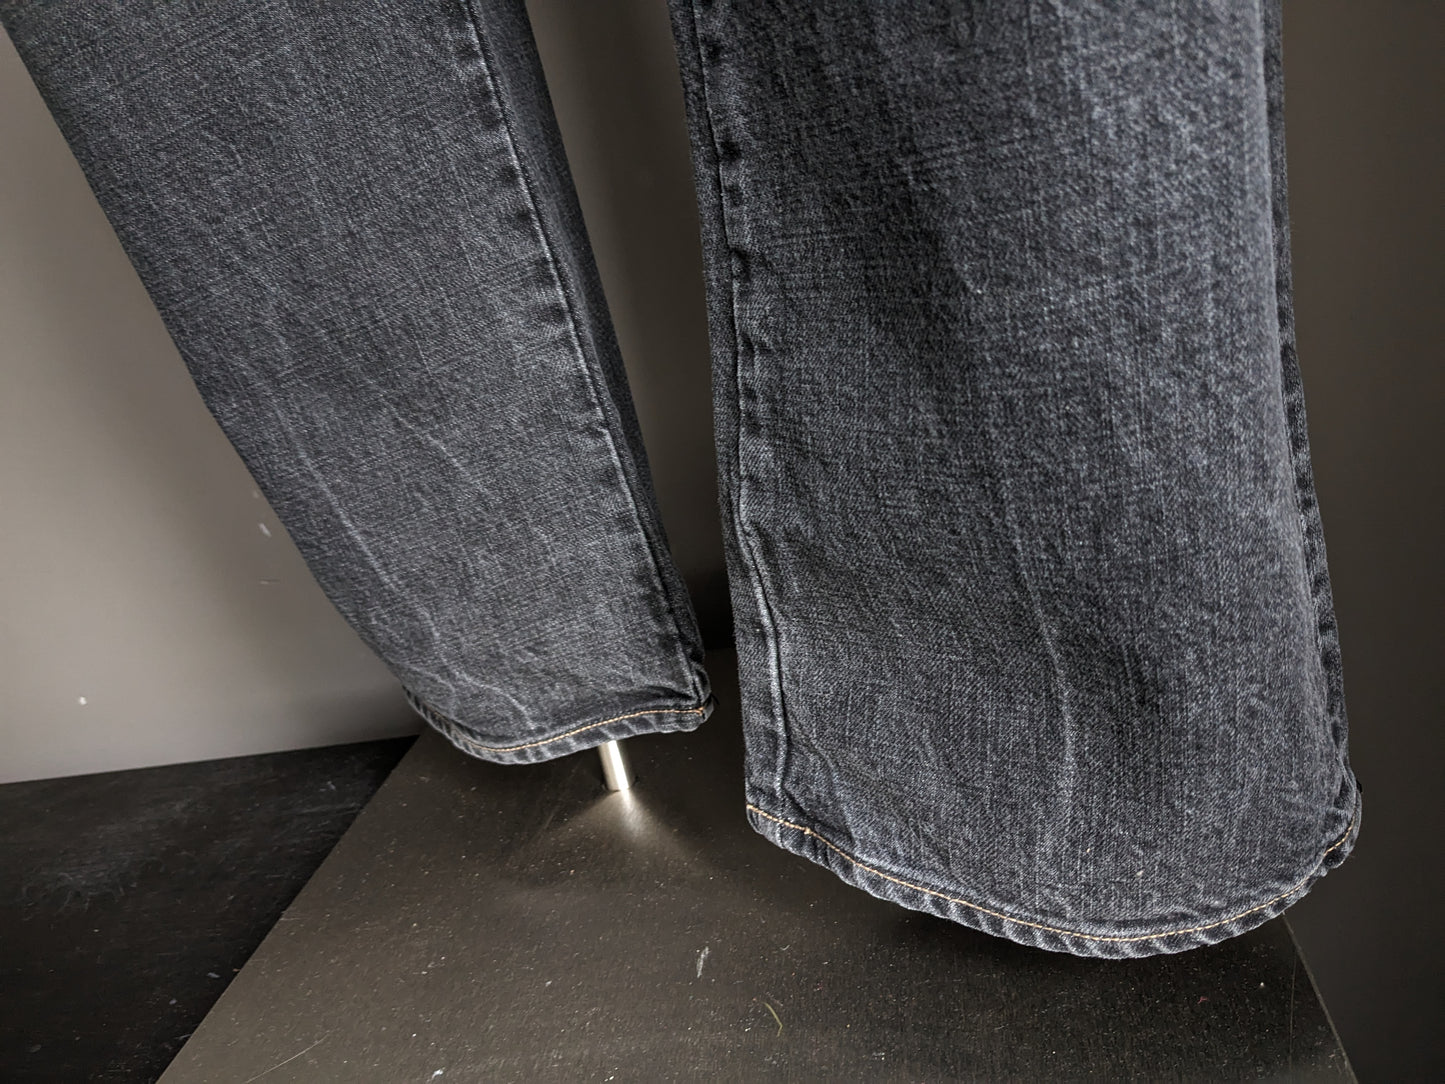 Jeans PME / Pall Mall. Grigio nero miscelato. Taglia W36 - L32. Tipo "Dakota".